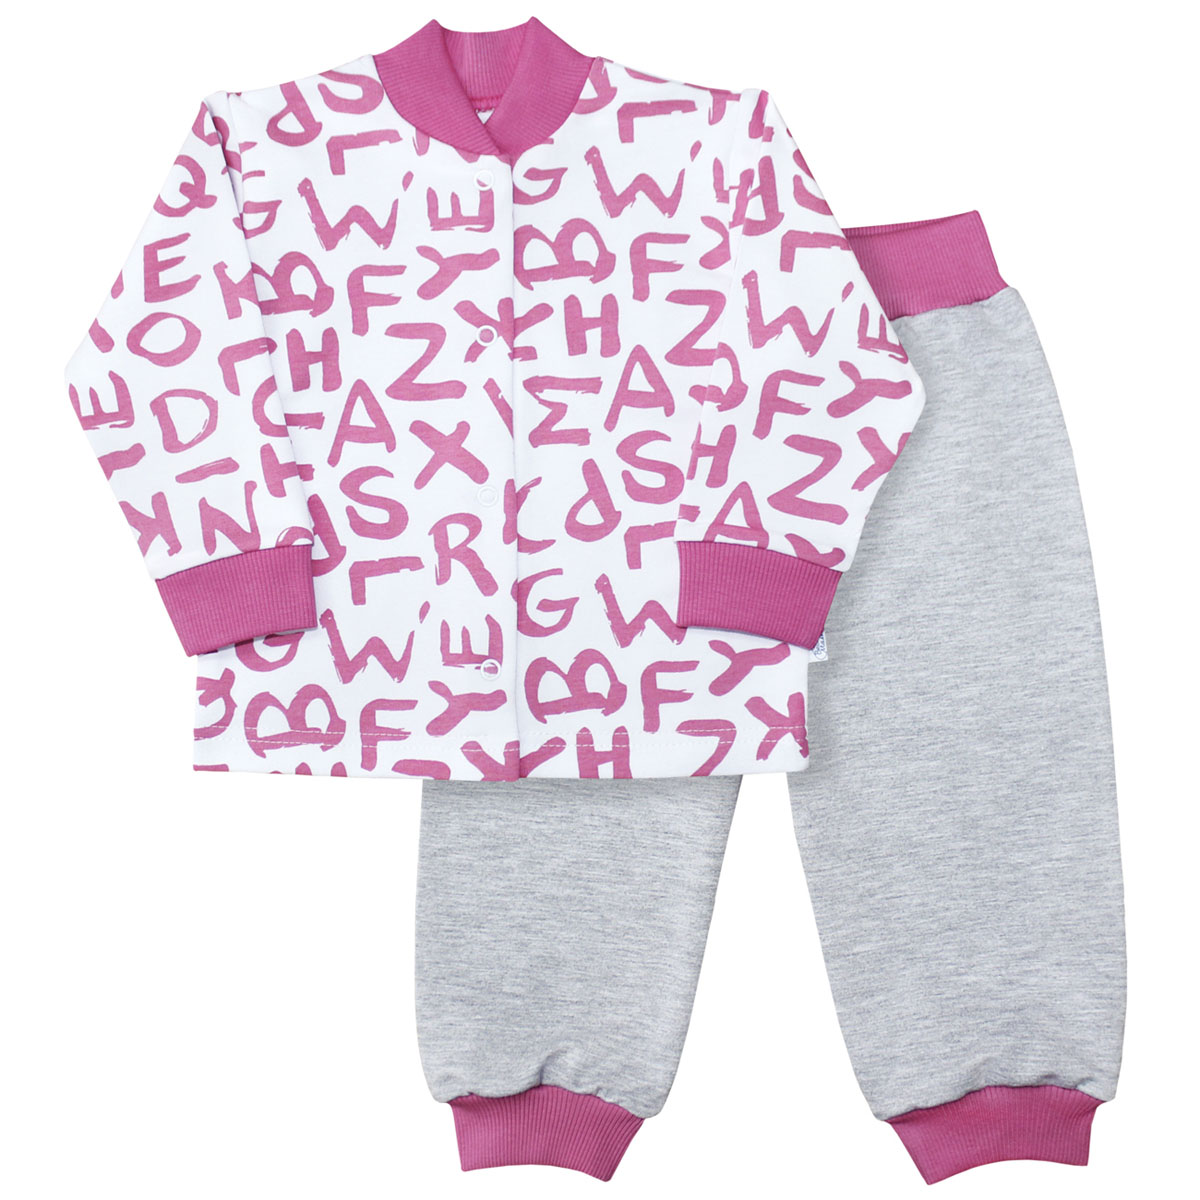 Комплект для девочки Веселый малыш Буквы: кофточка, брюки, цвет: розовый. 22136/142/бу-розовый. Размер 74